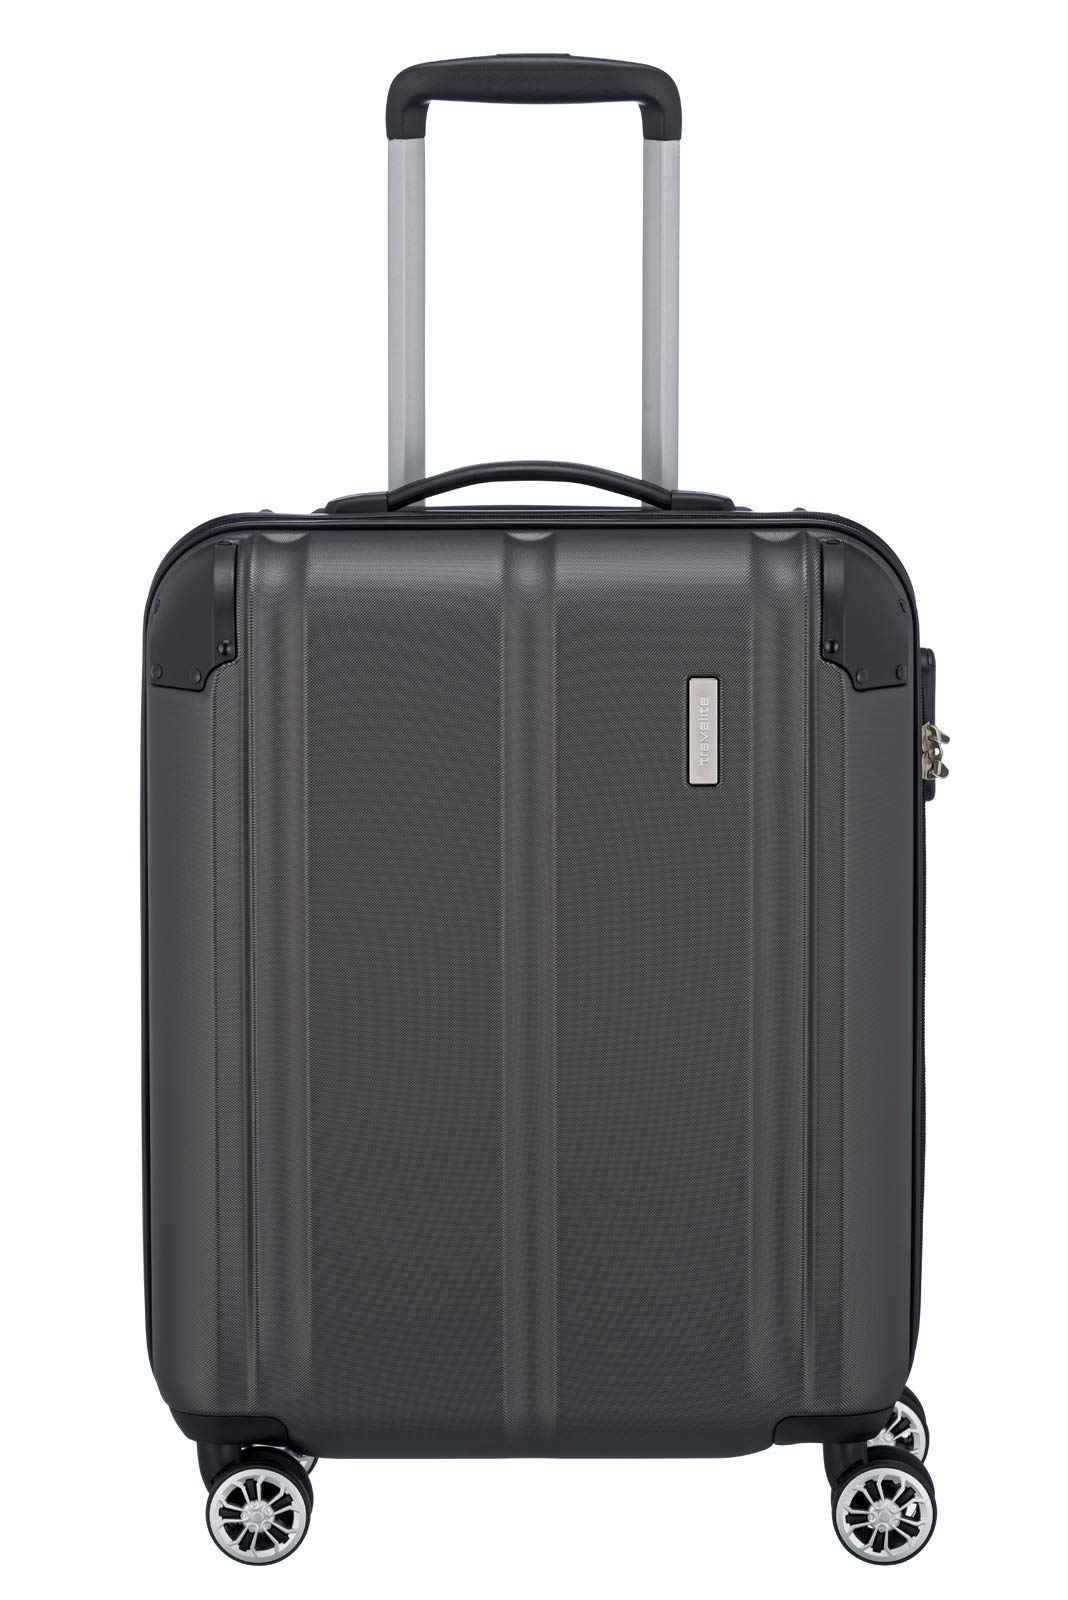 travelite 4-Rad Handgepäck Koffer erfüllt IATA Bordgepäckmaß, Gepäck Serie CITY: Robuster Hartschalen Trolley mit kratzfester Oberfläche, 55 cm, 40 Liter